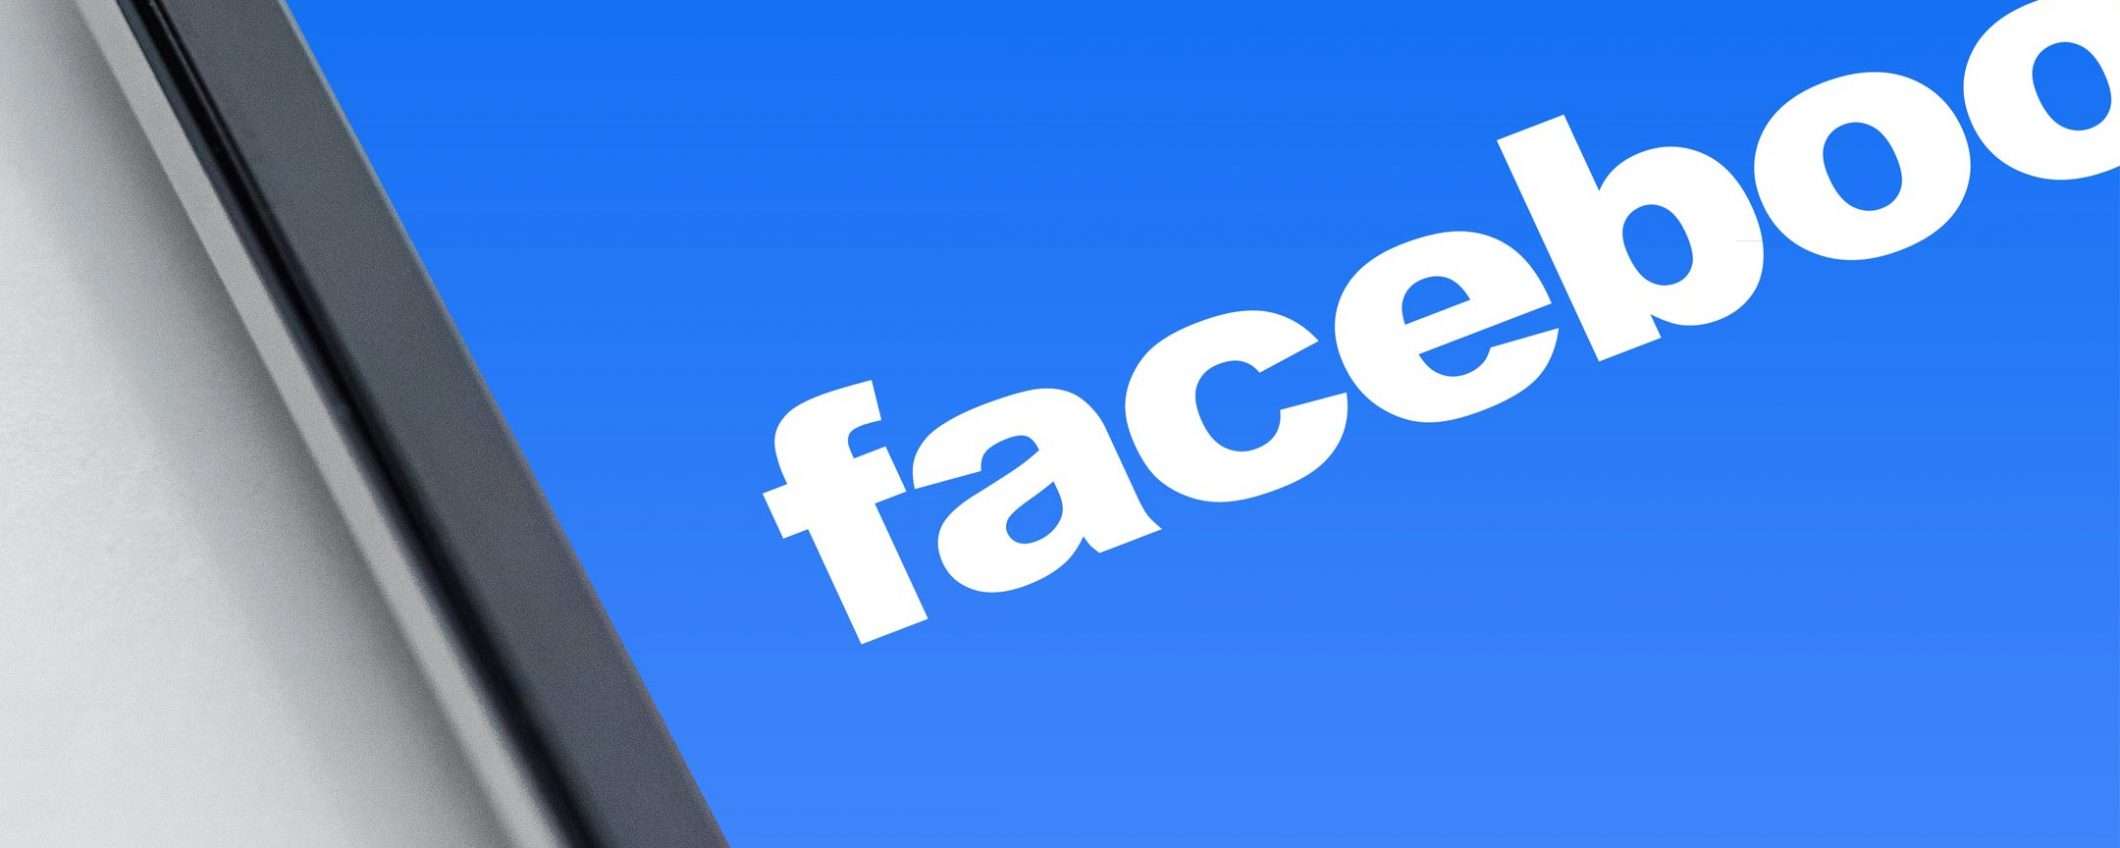 Facebook: un'acquisizione per la sicurezza